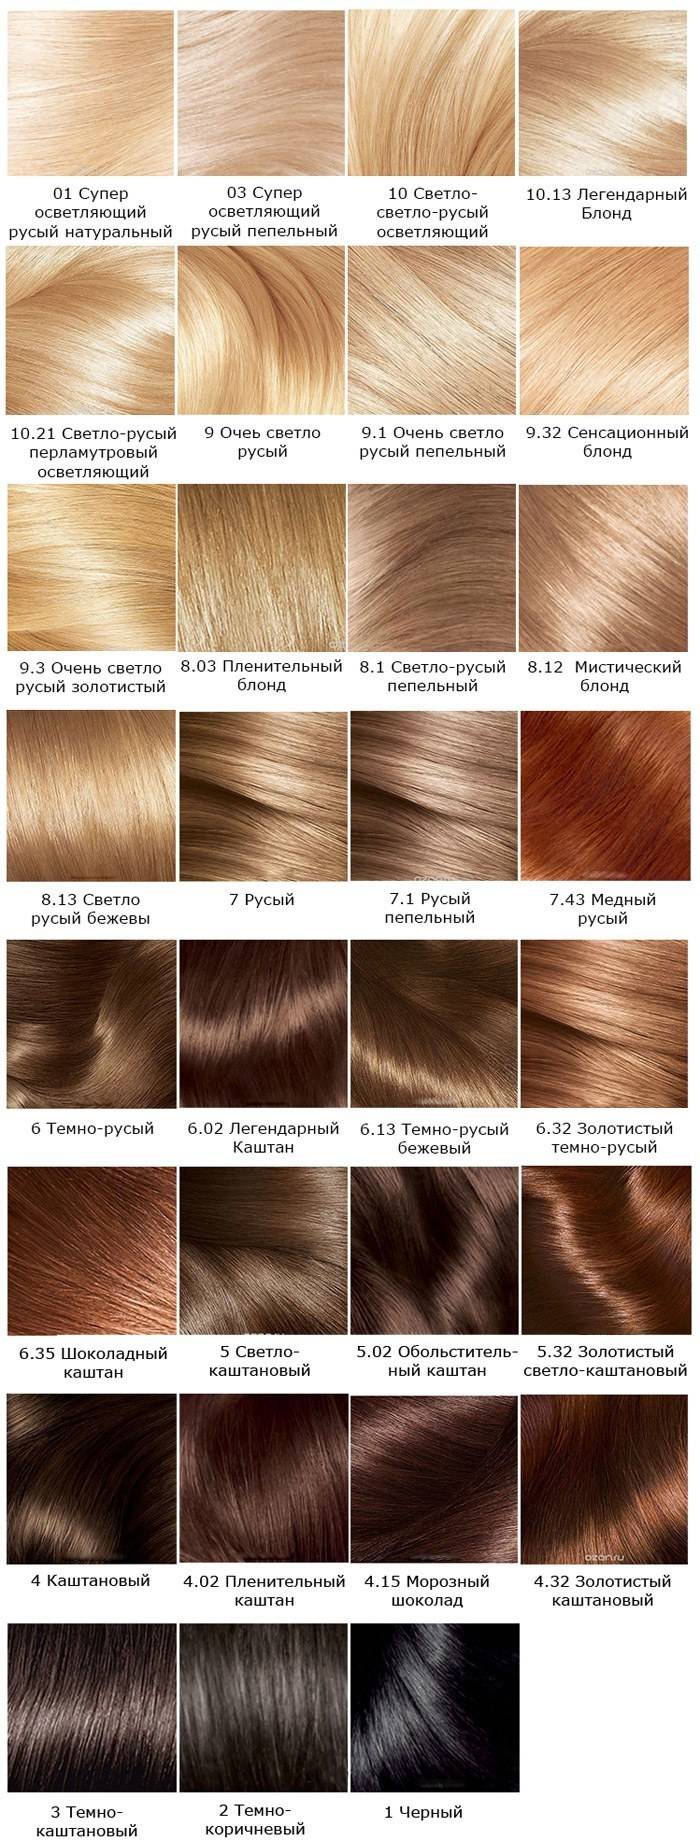 Краска для волос лореаль экселанс - палитра цветов, отзывы (l'oreal excellence)